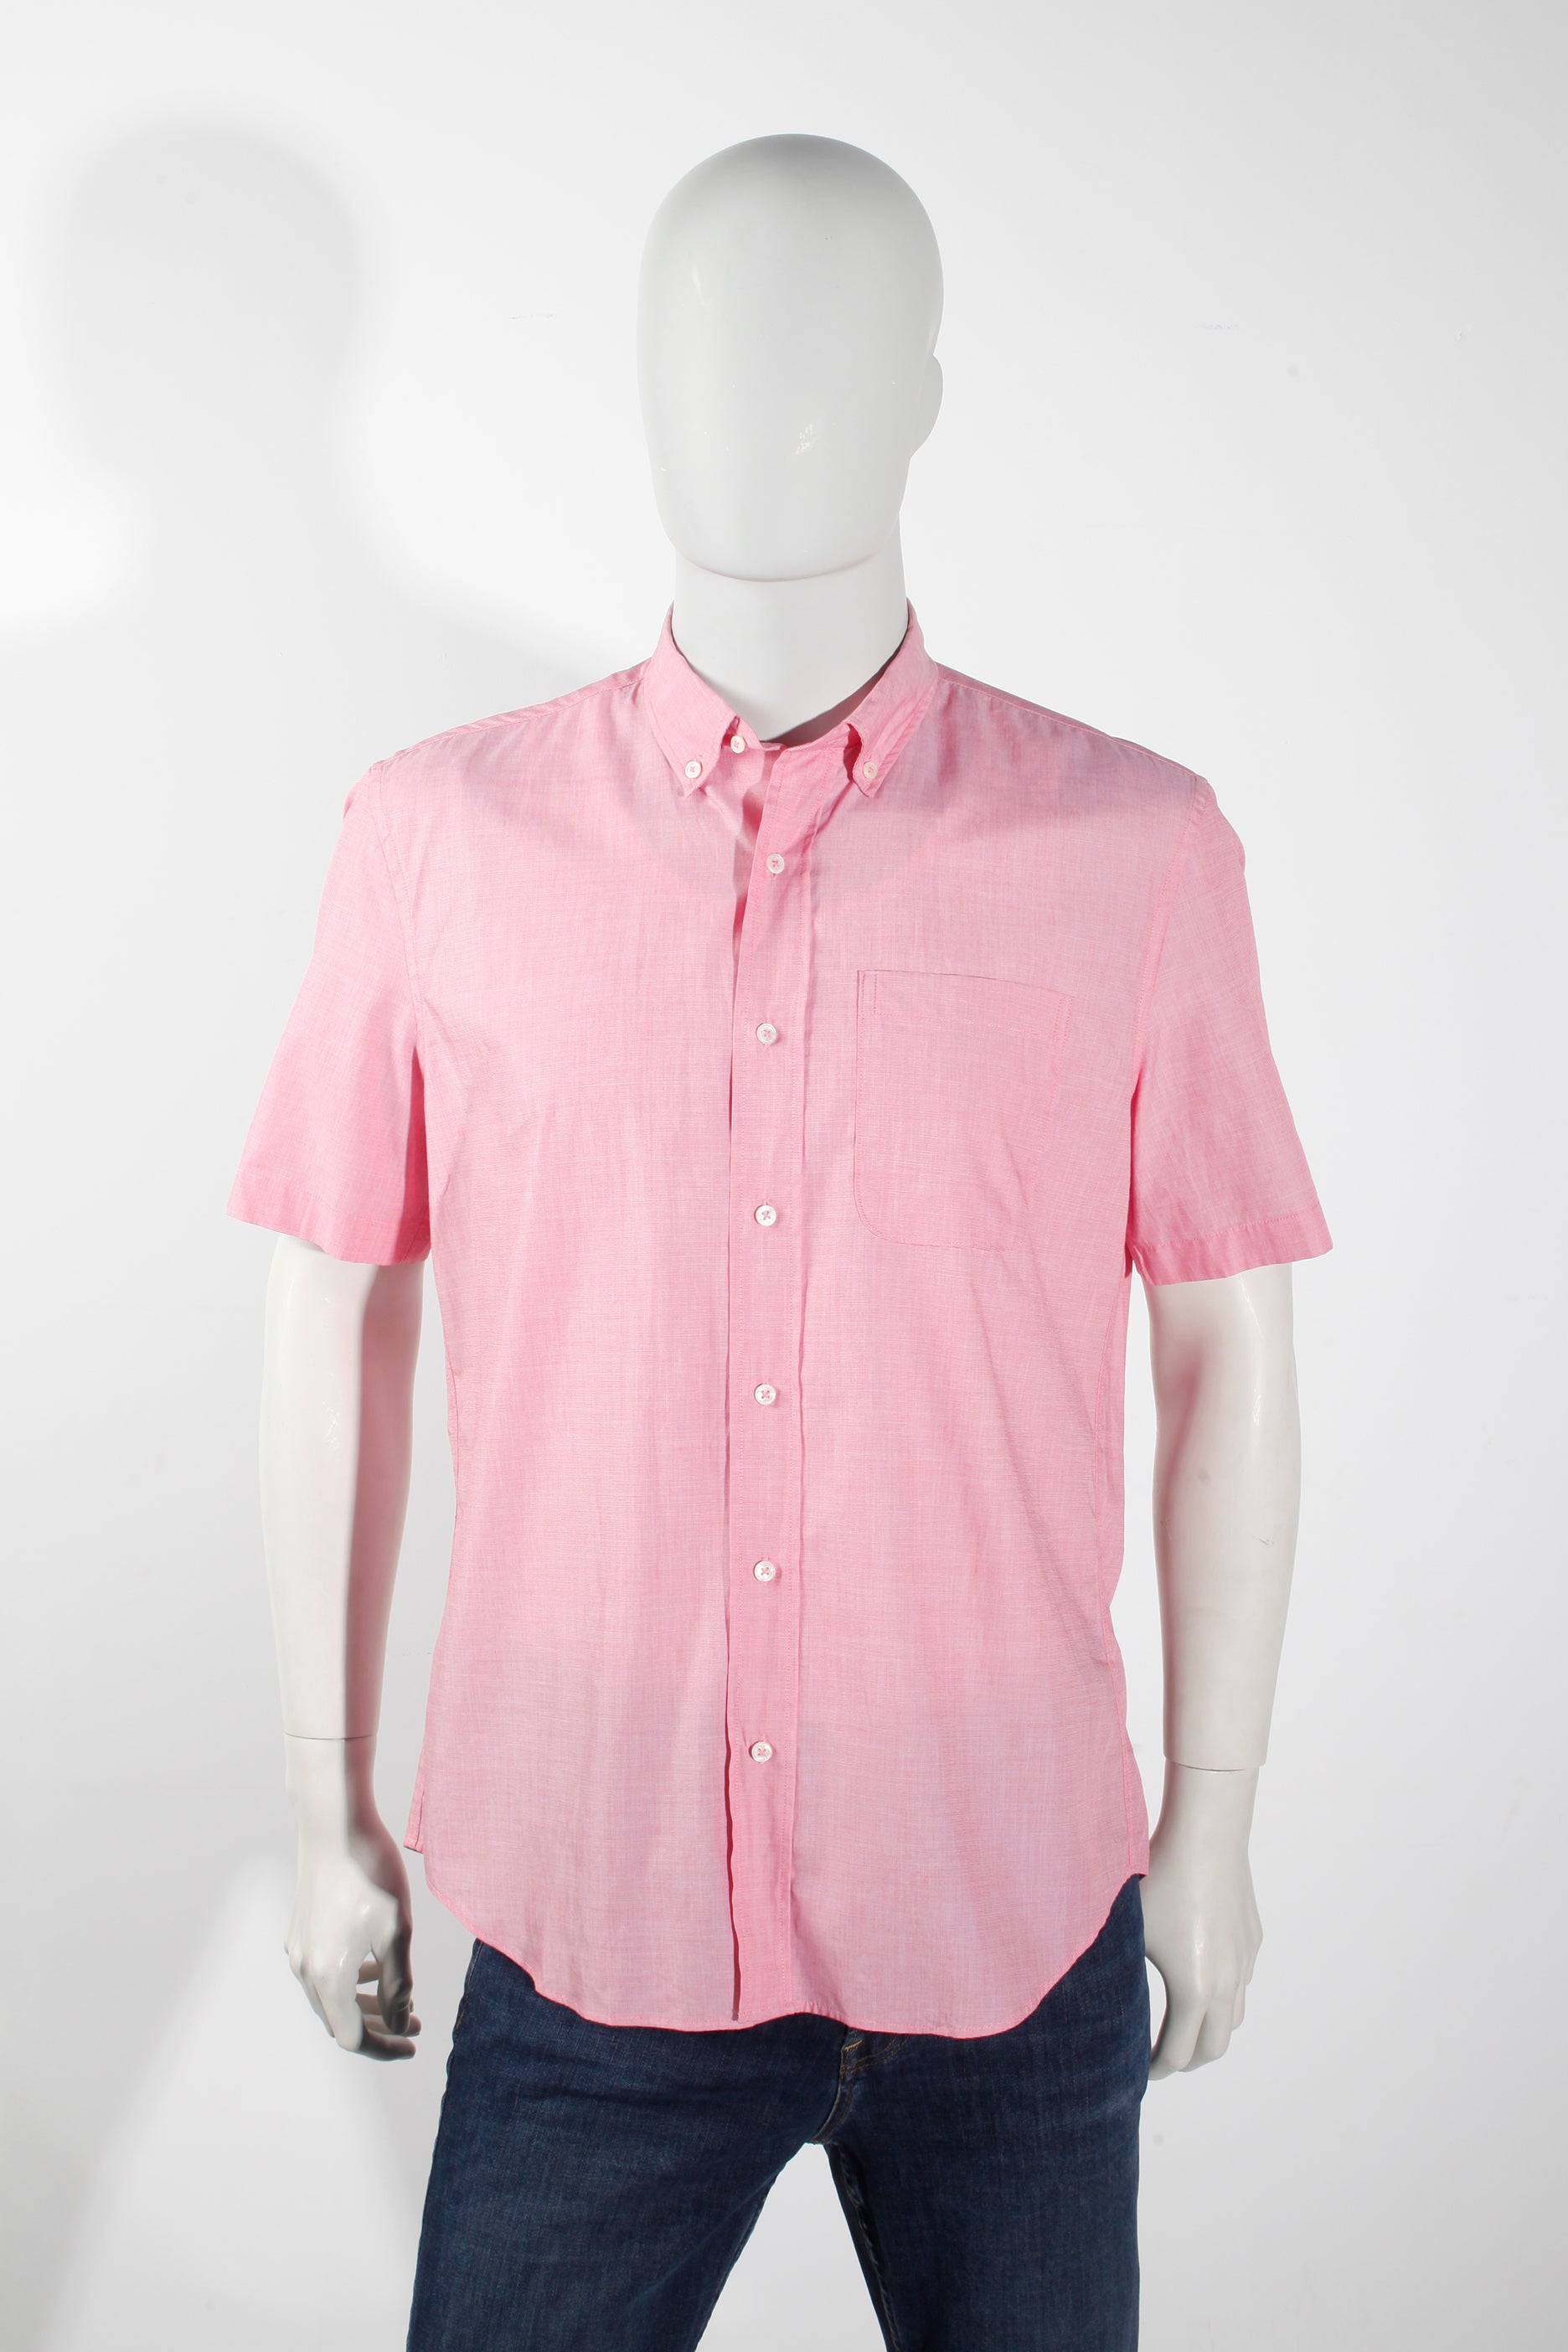 Men's Pink Short-Sleeved Shirt (Medium)